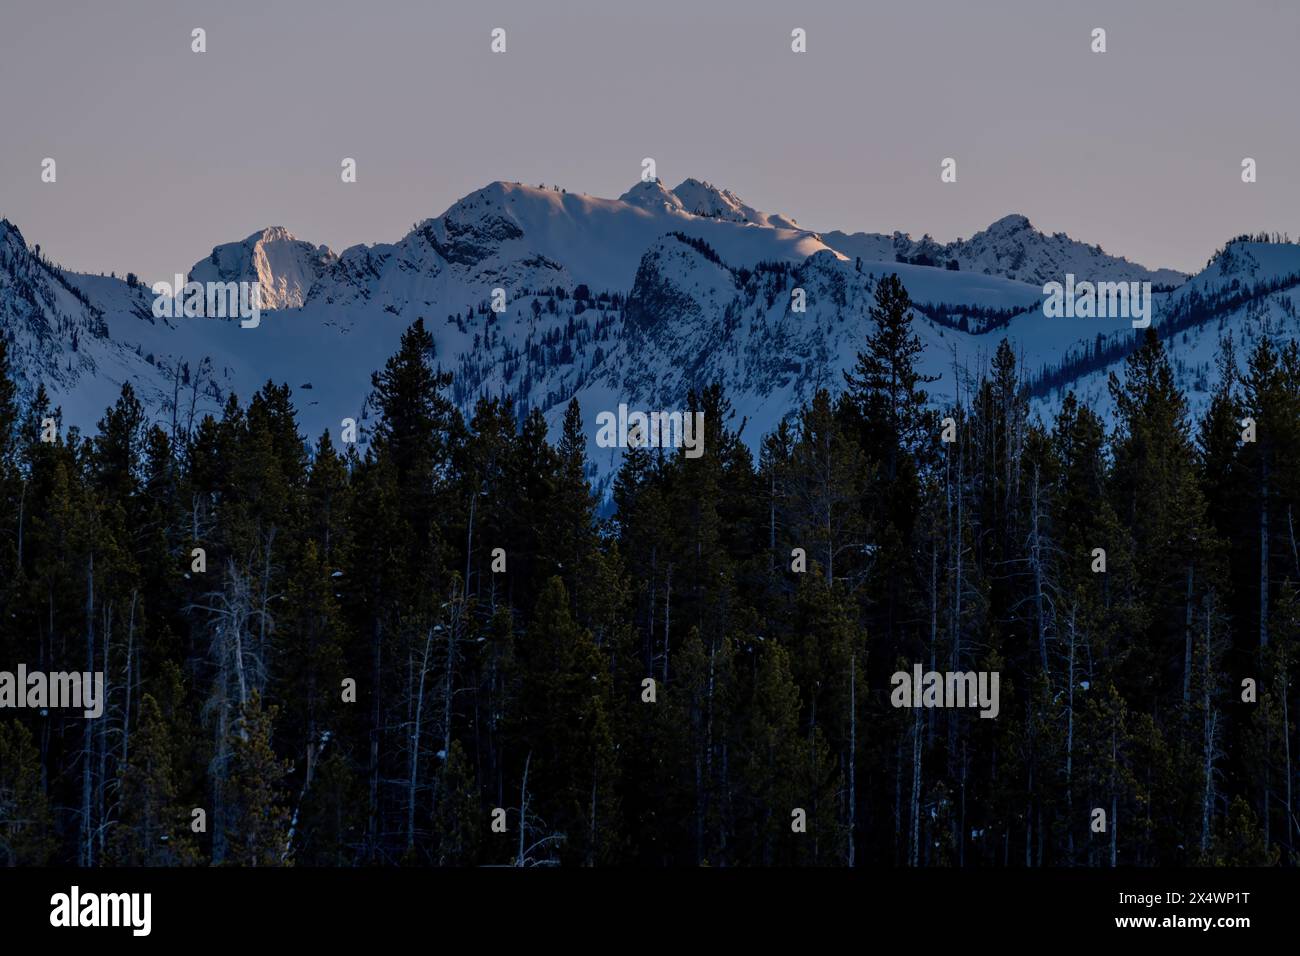 Idaho winter mountain range with sunset on tops Stock Photo